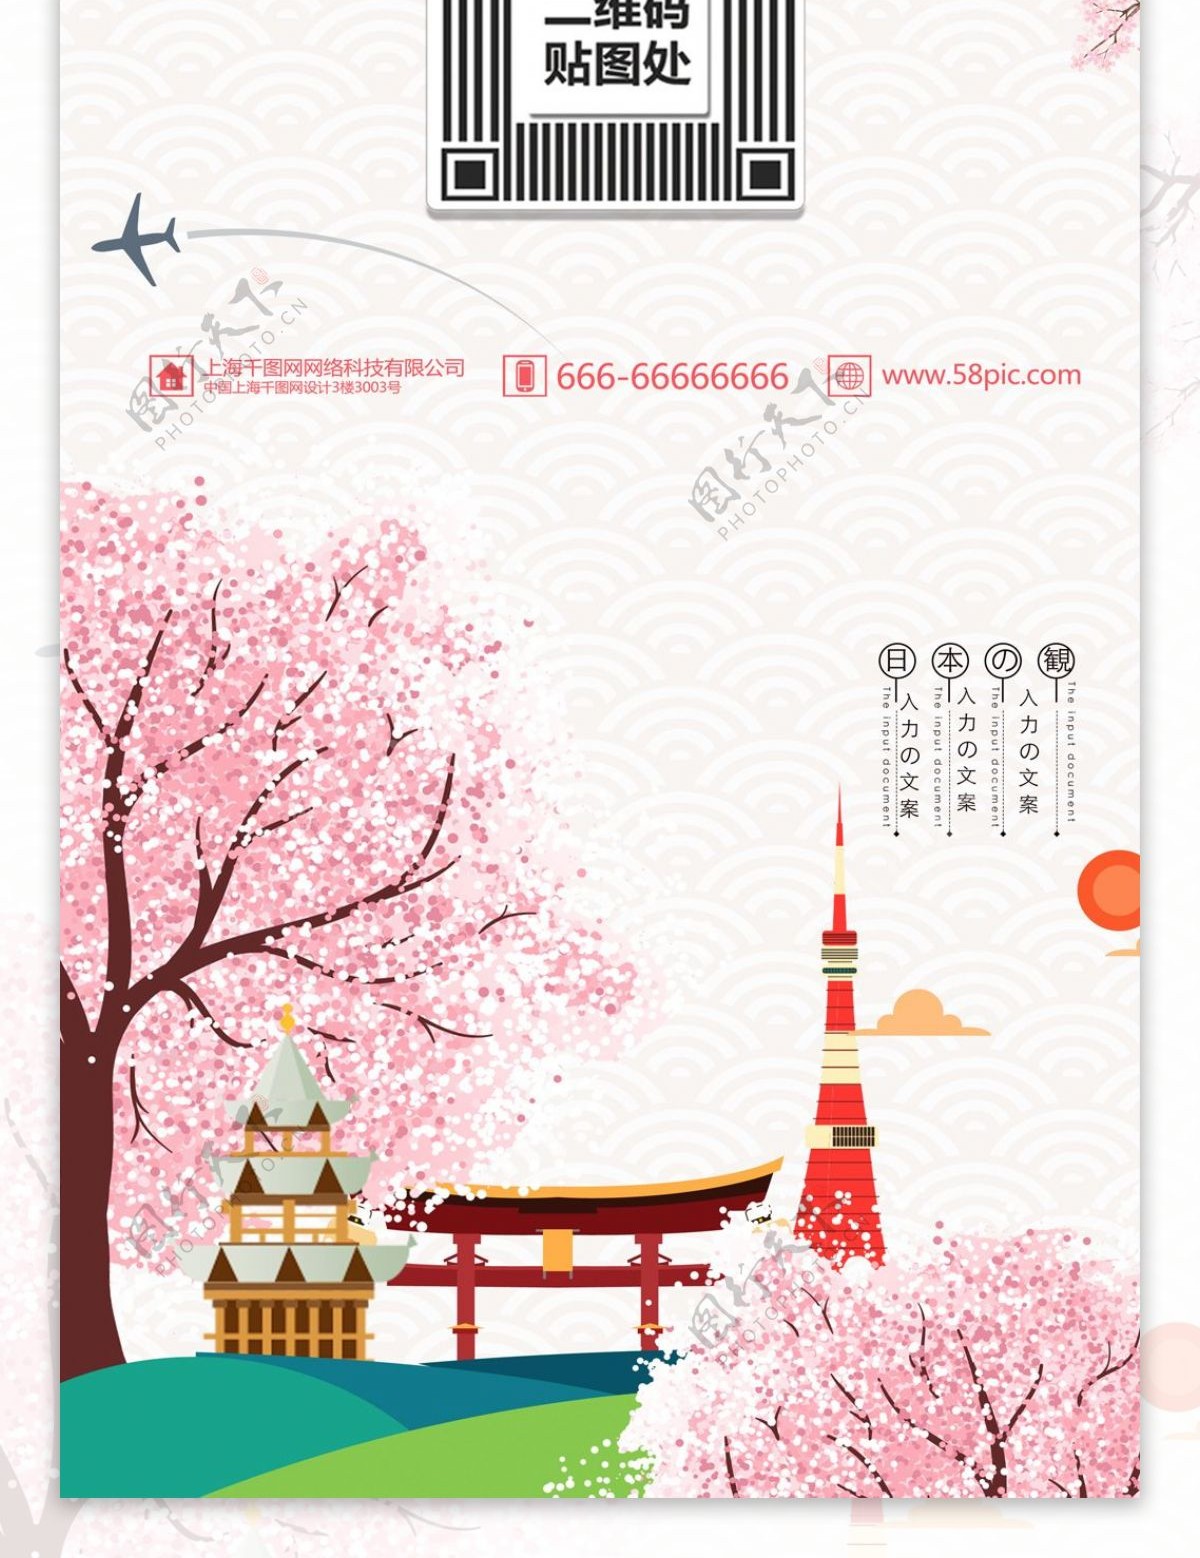 粉色清新夏季日本旅游旅行促销展架